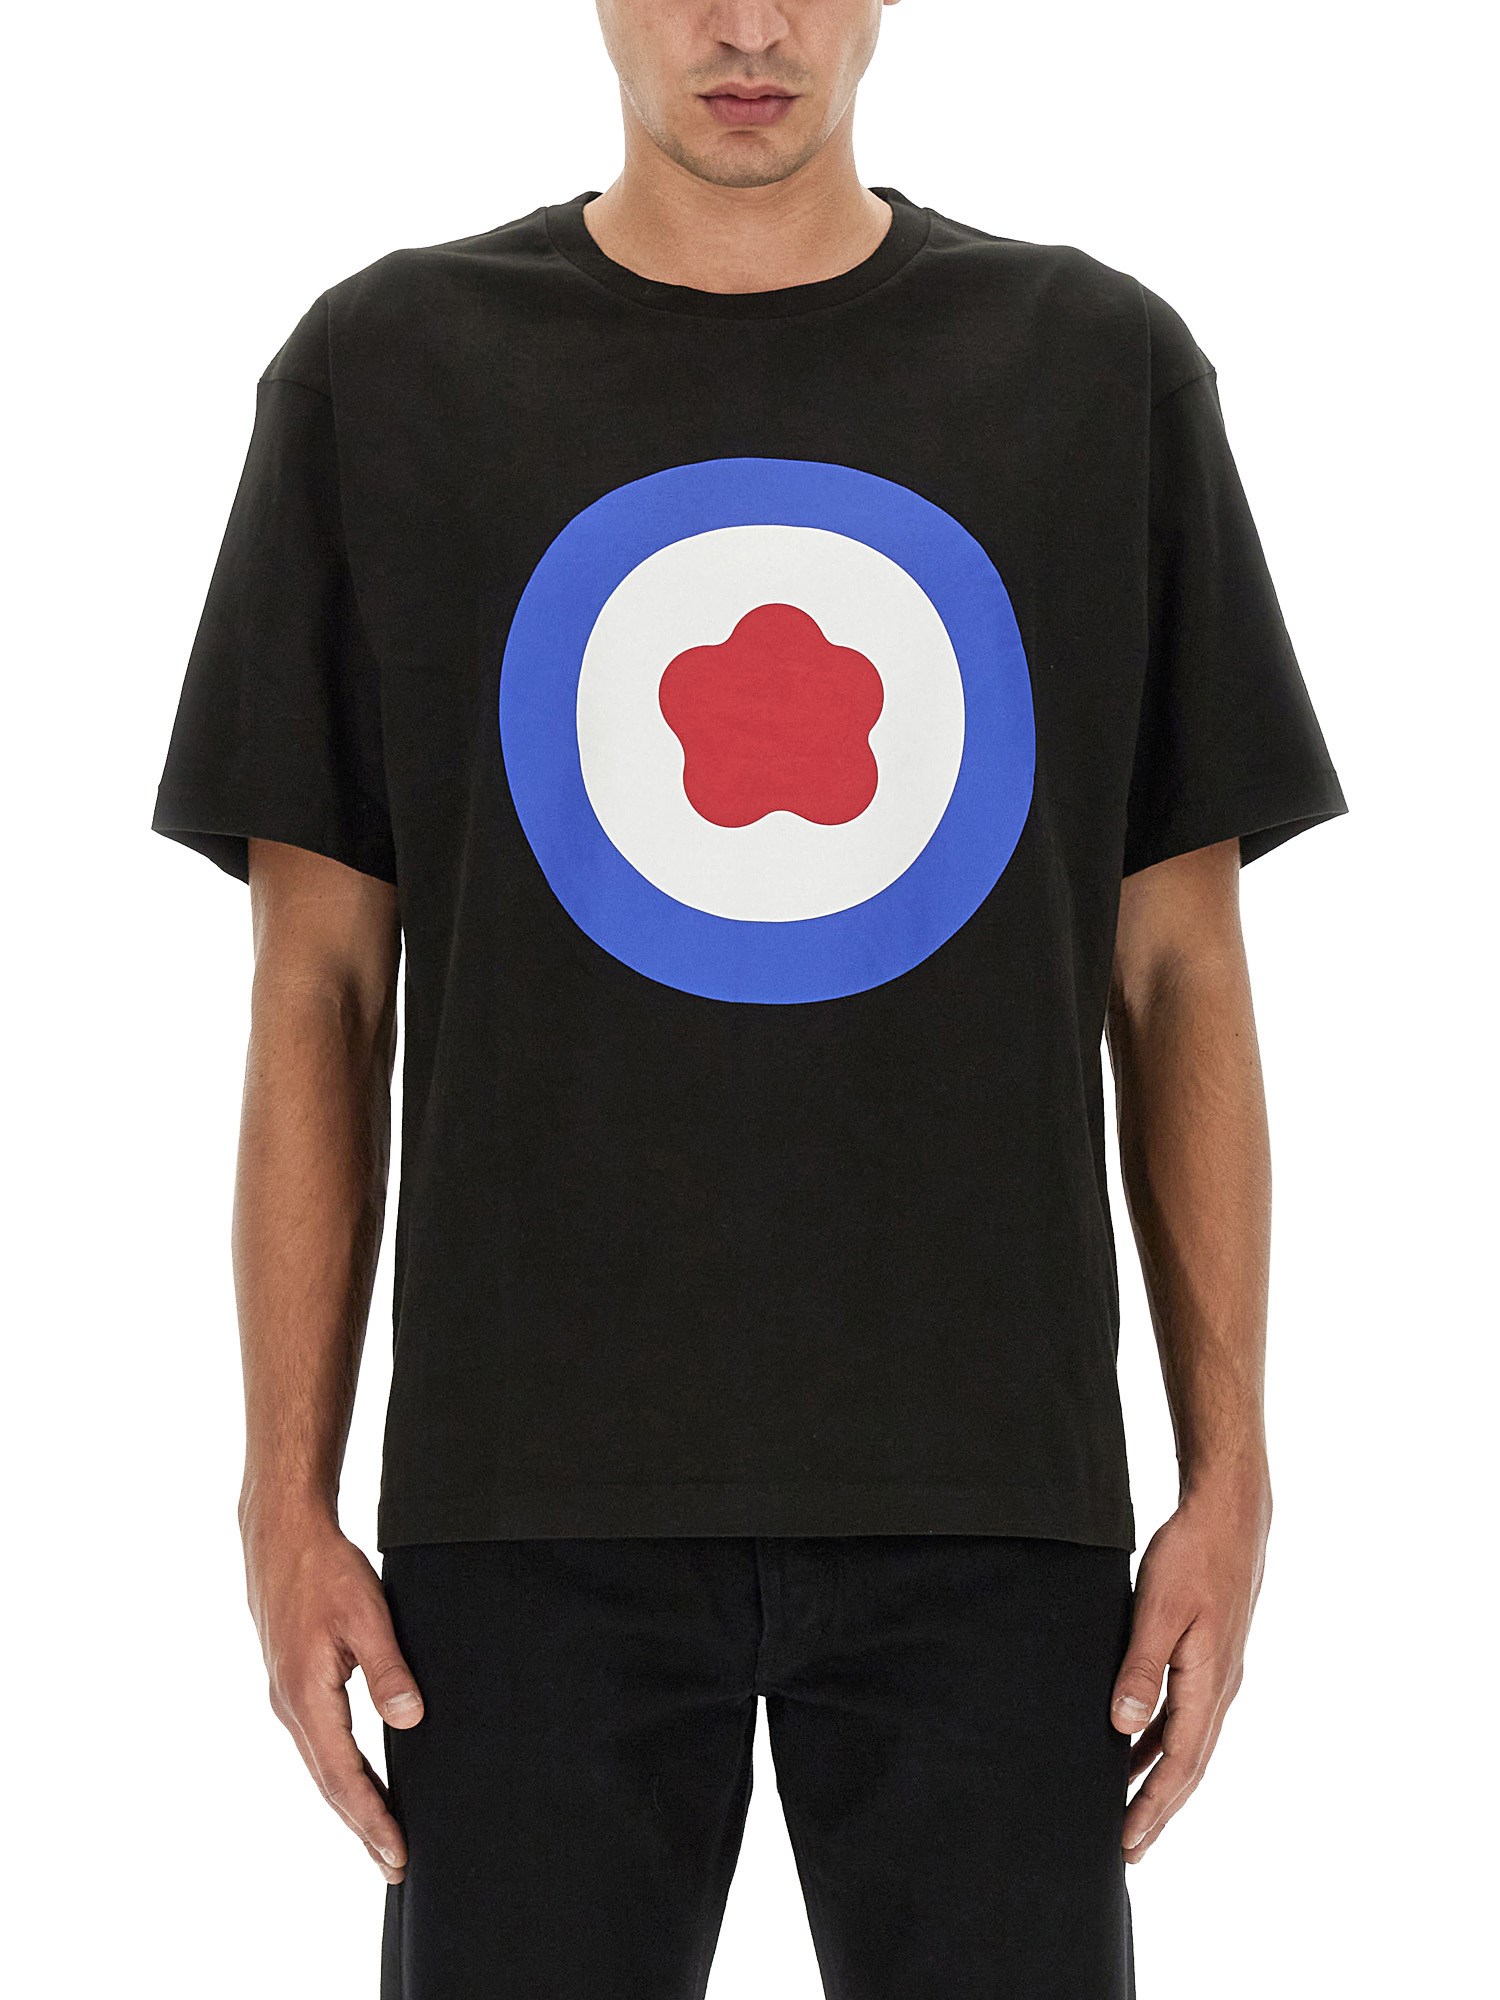 kenzo target t-shirt